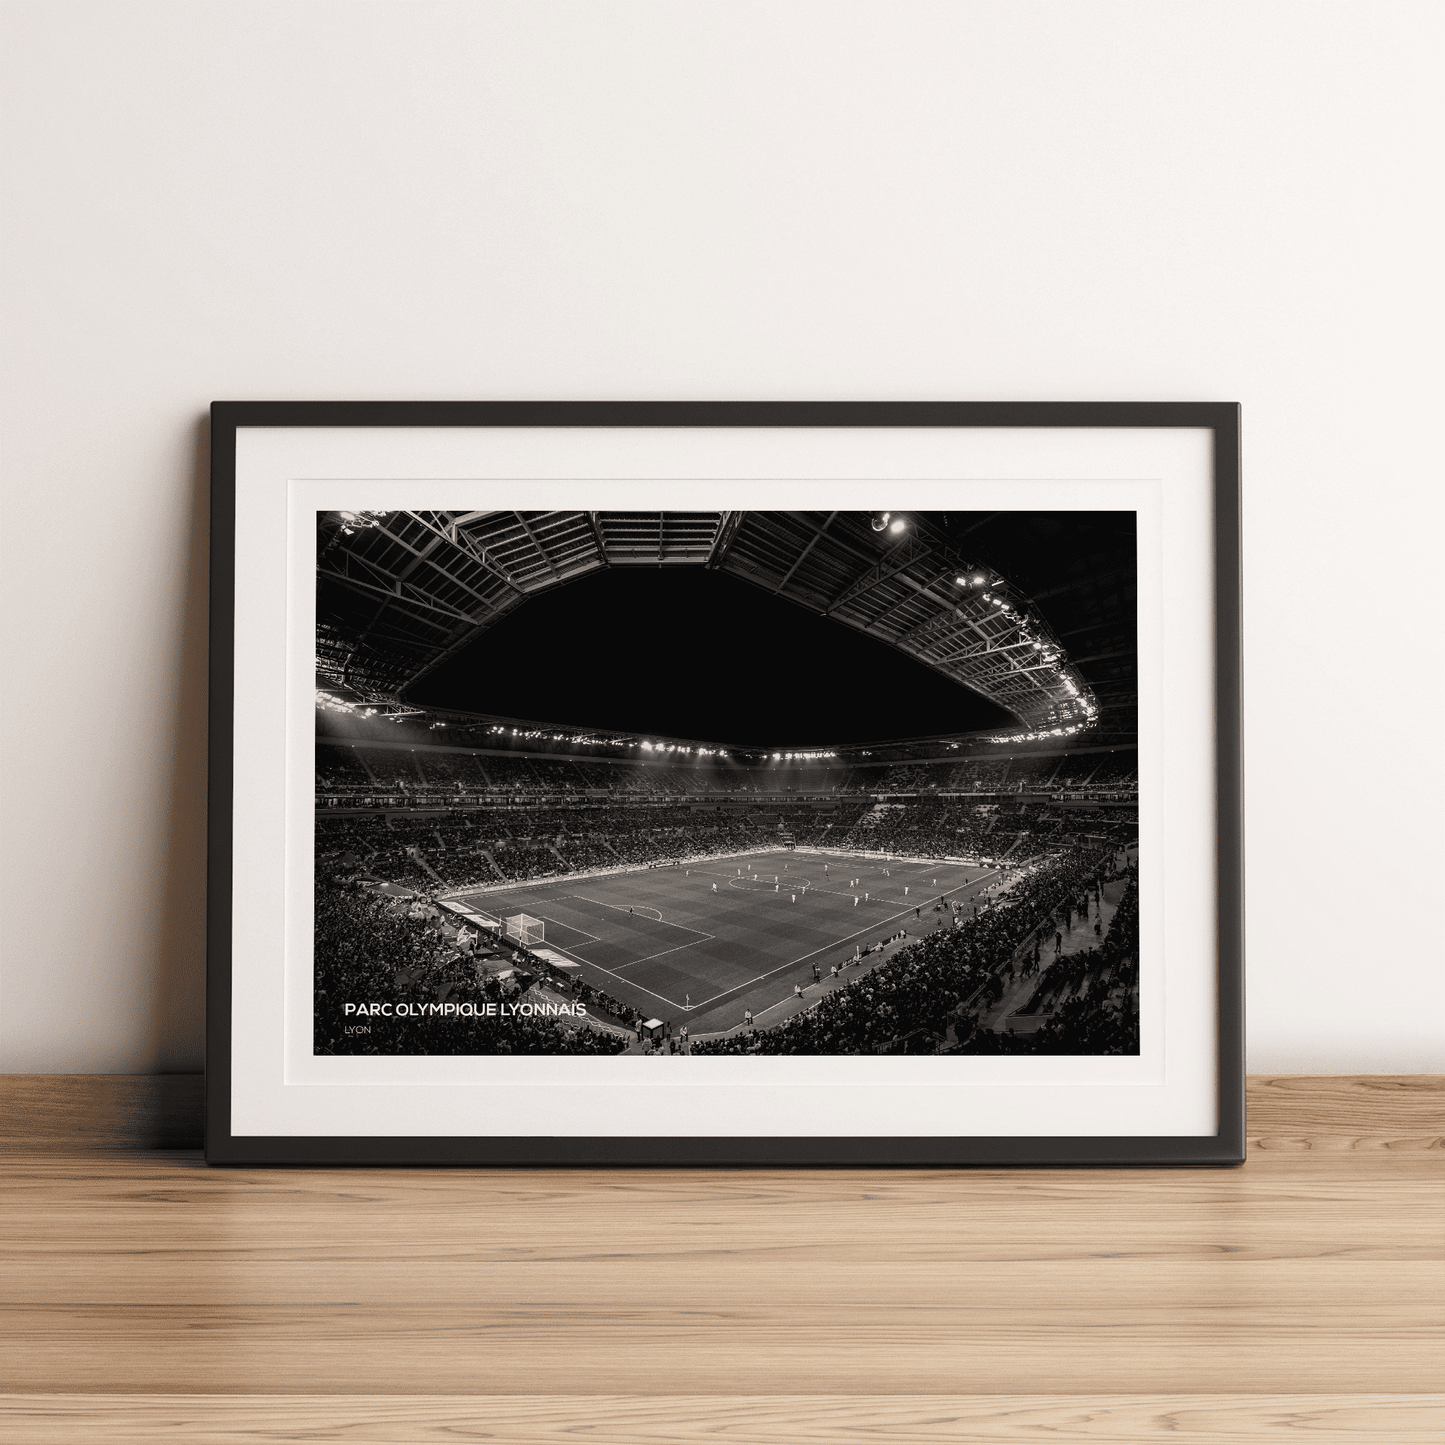 Impresión fotográfica del estadio Parc Olympique Lyonnais